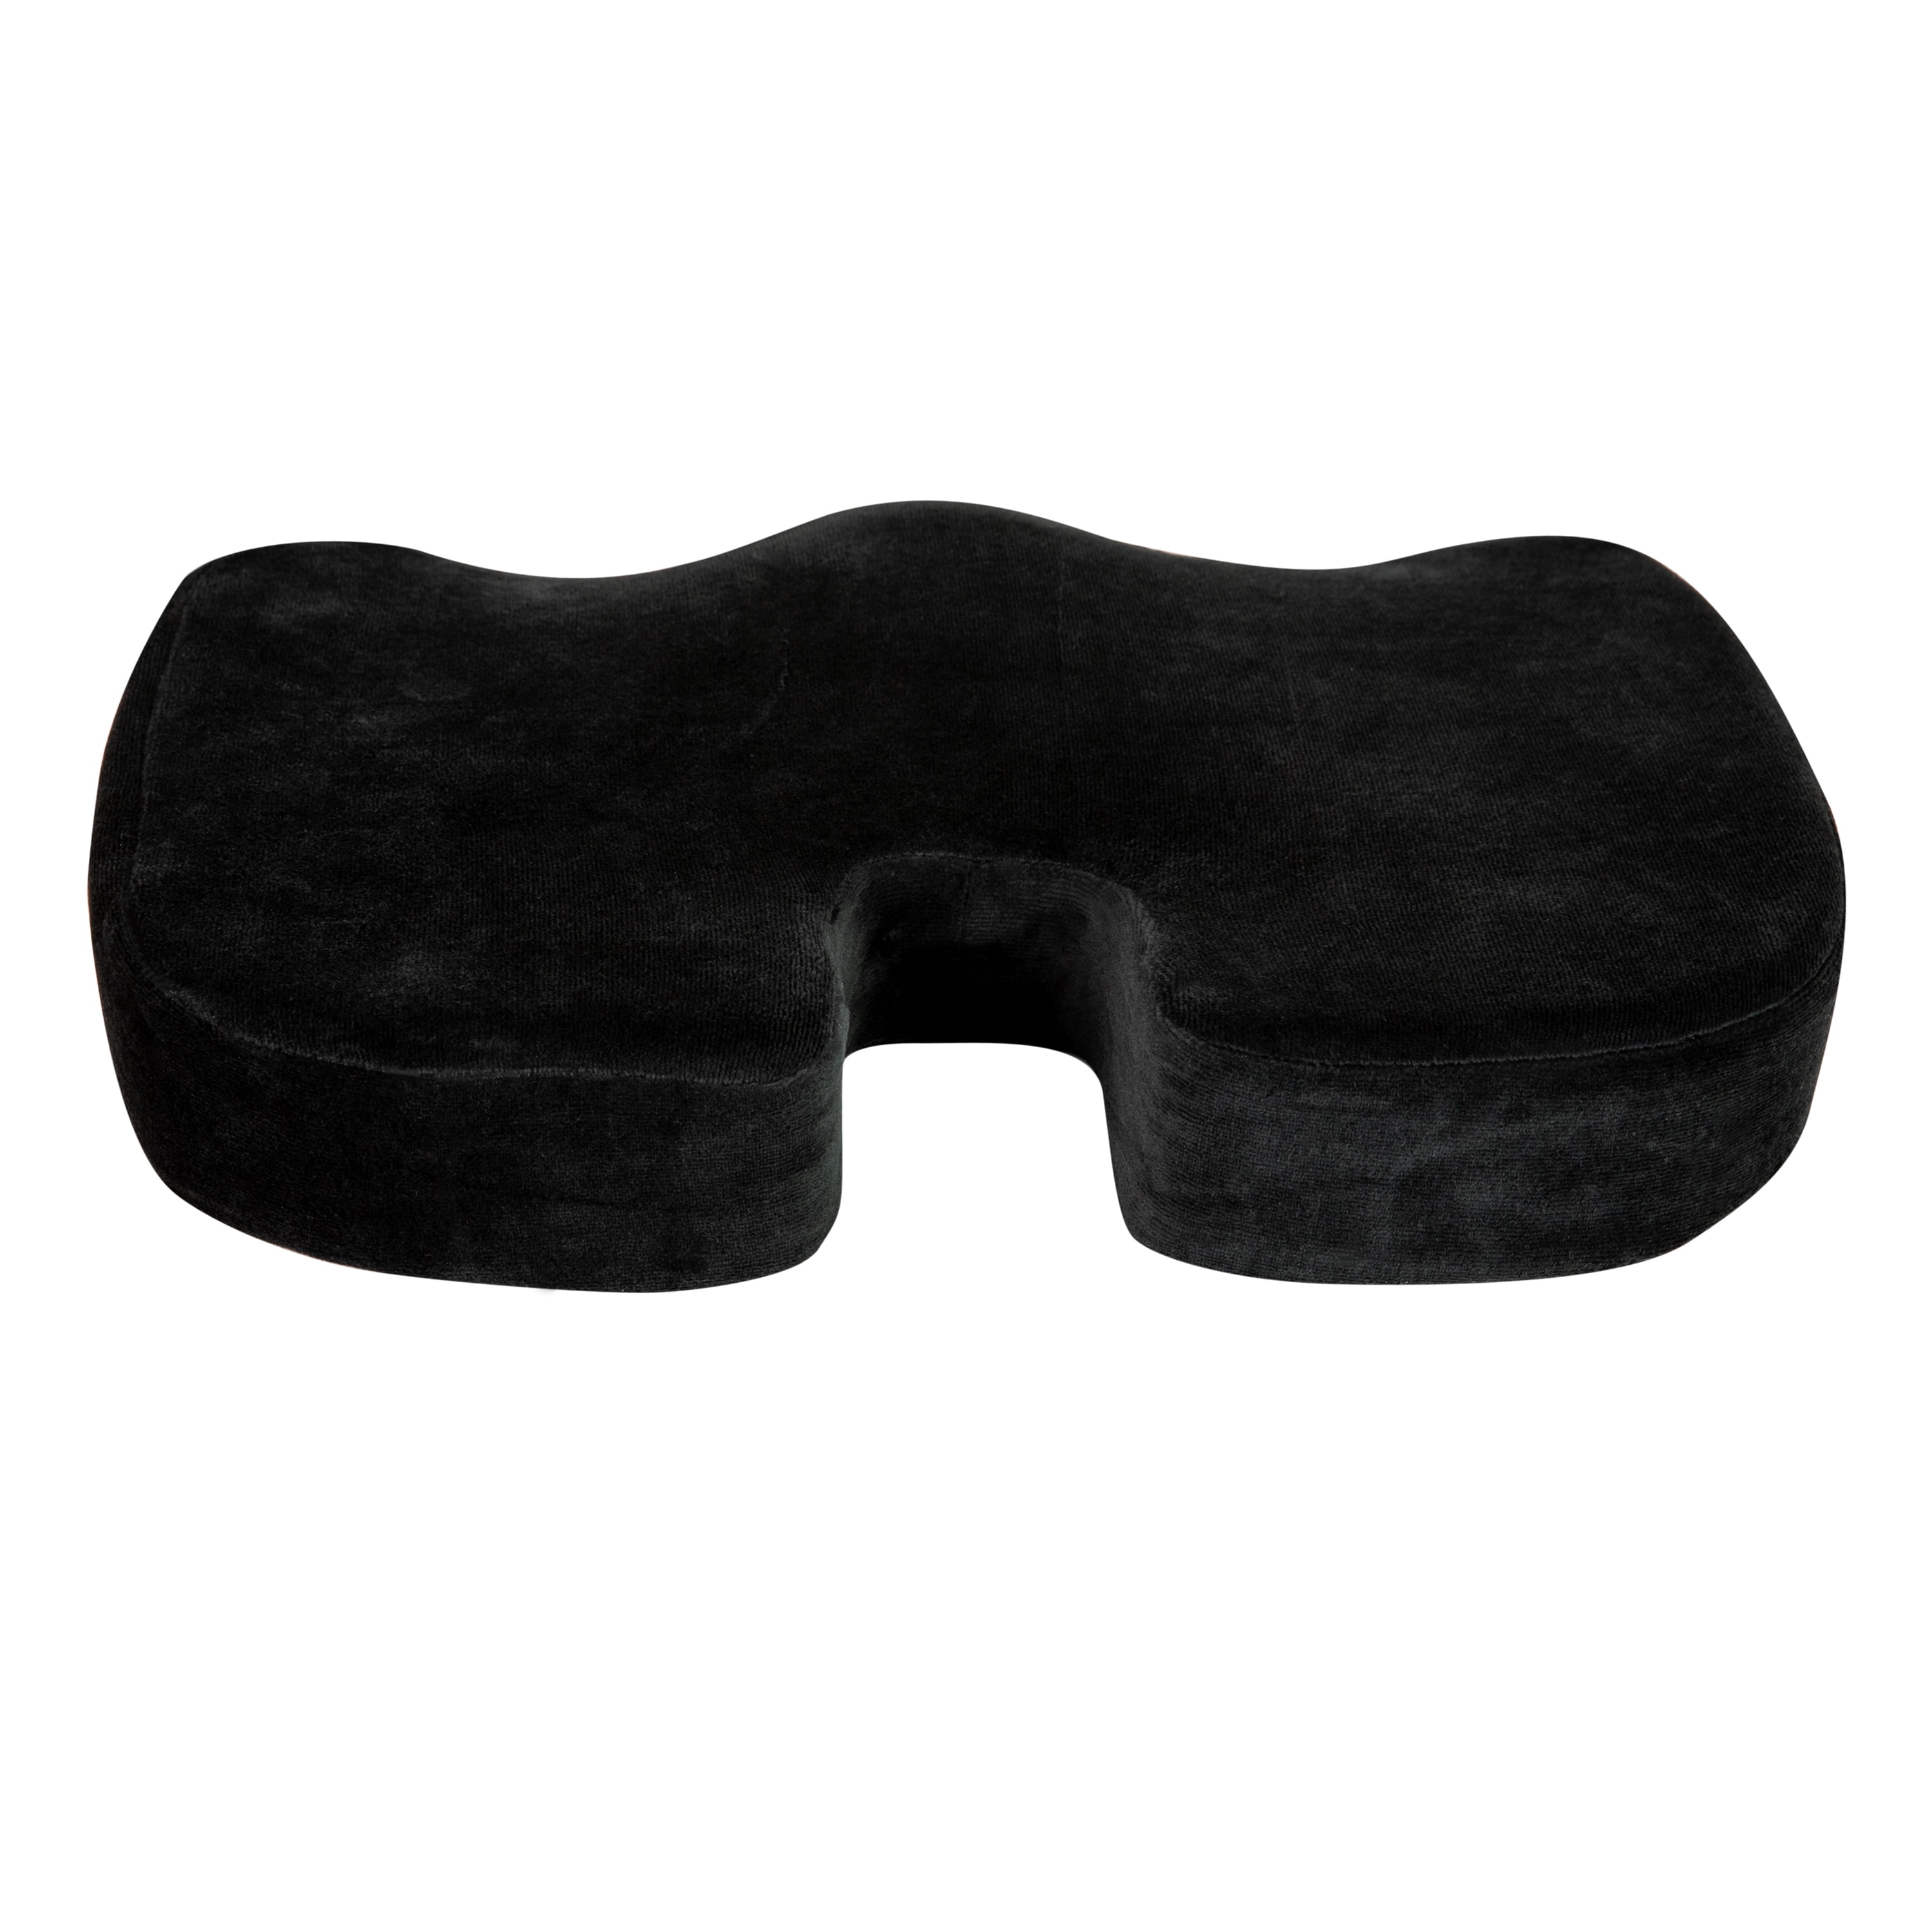 Xtreme Comforts Black Seat Cushion - 1 Large Padded Uganda